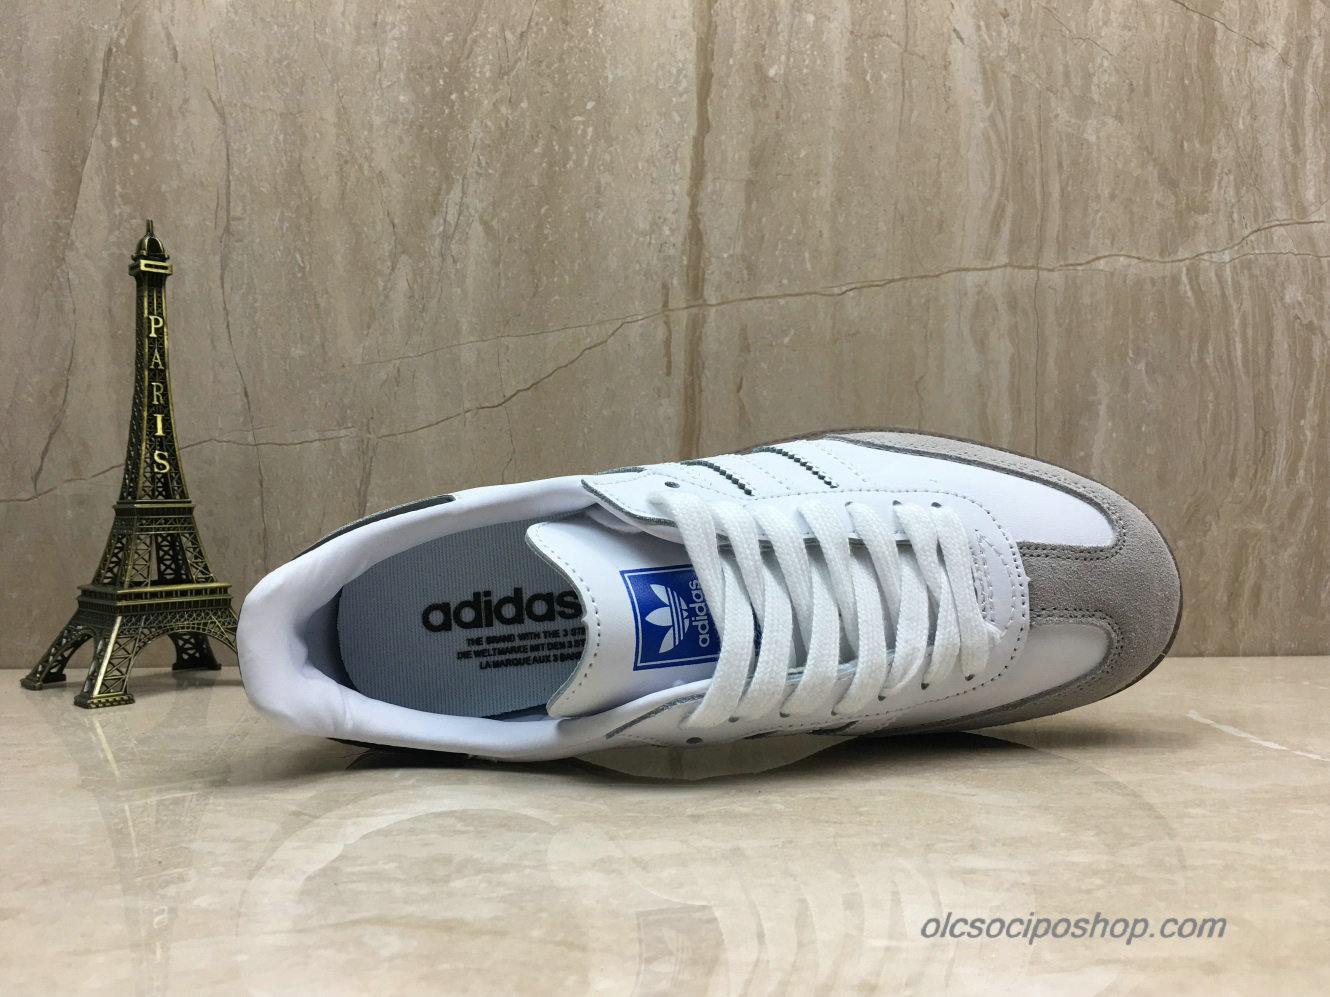 Adidas Samba OG Fehér/Szürke/Fekete Cipők (B75804) - Kattintásra bezárul